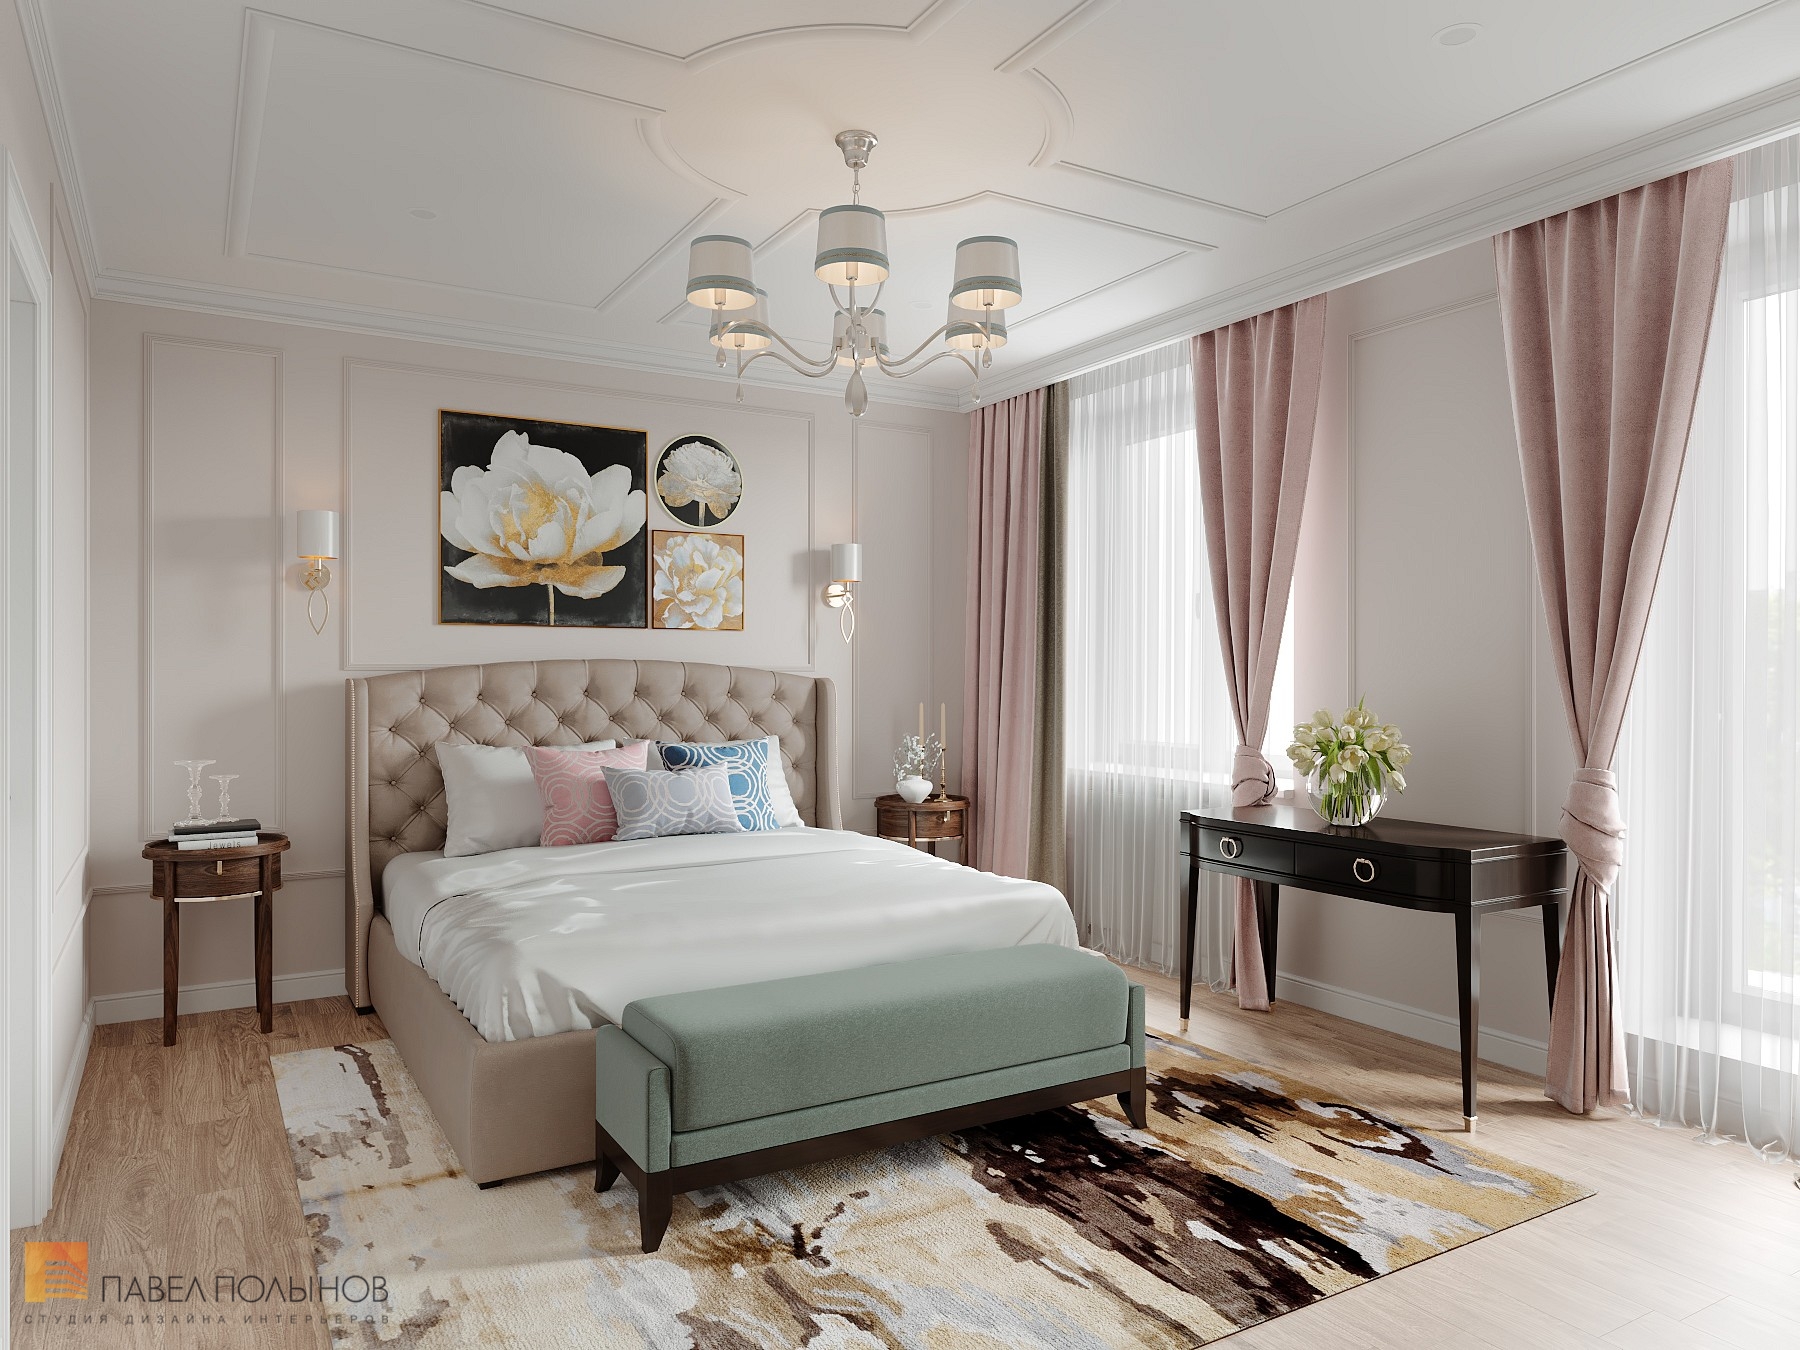 Фото спальня из проекта «Интерьер квартиры 140 кв.м. в стиле неоклассики»